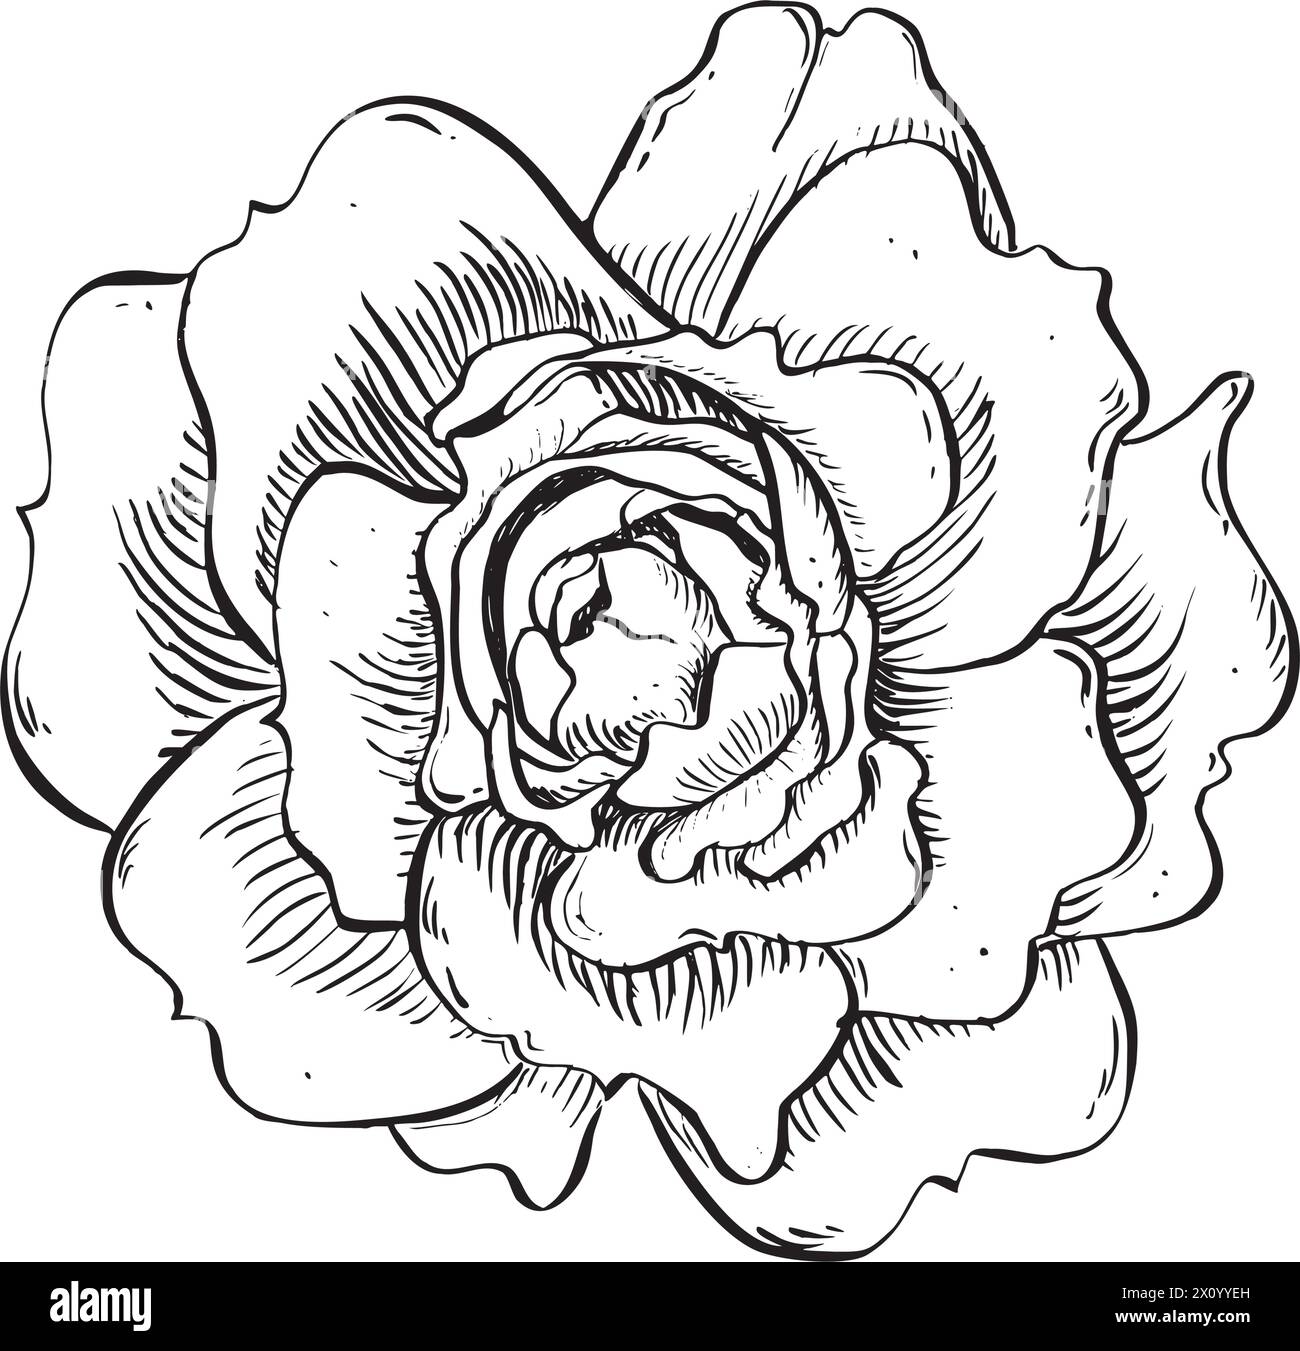 Fleur de rose sauvage. Illustration florale dessinée à la main de vecteur de la hanche rose fleurie dans le style de contour. Esquissez en noir et blanc sur fond isolé Illustration de Vecteur